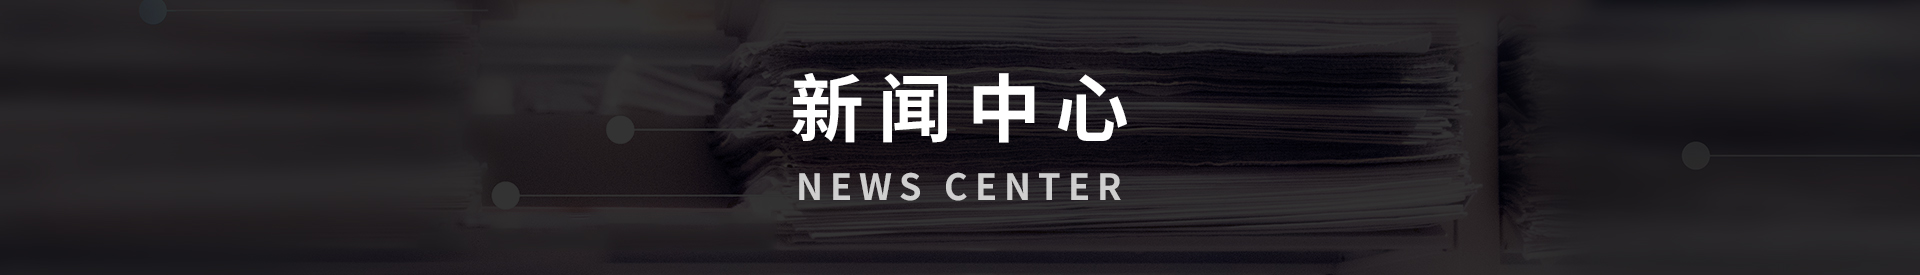 News Center